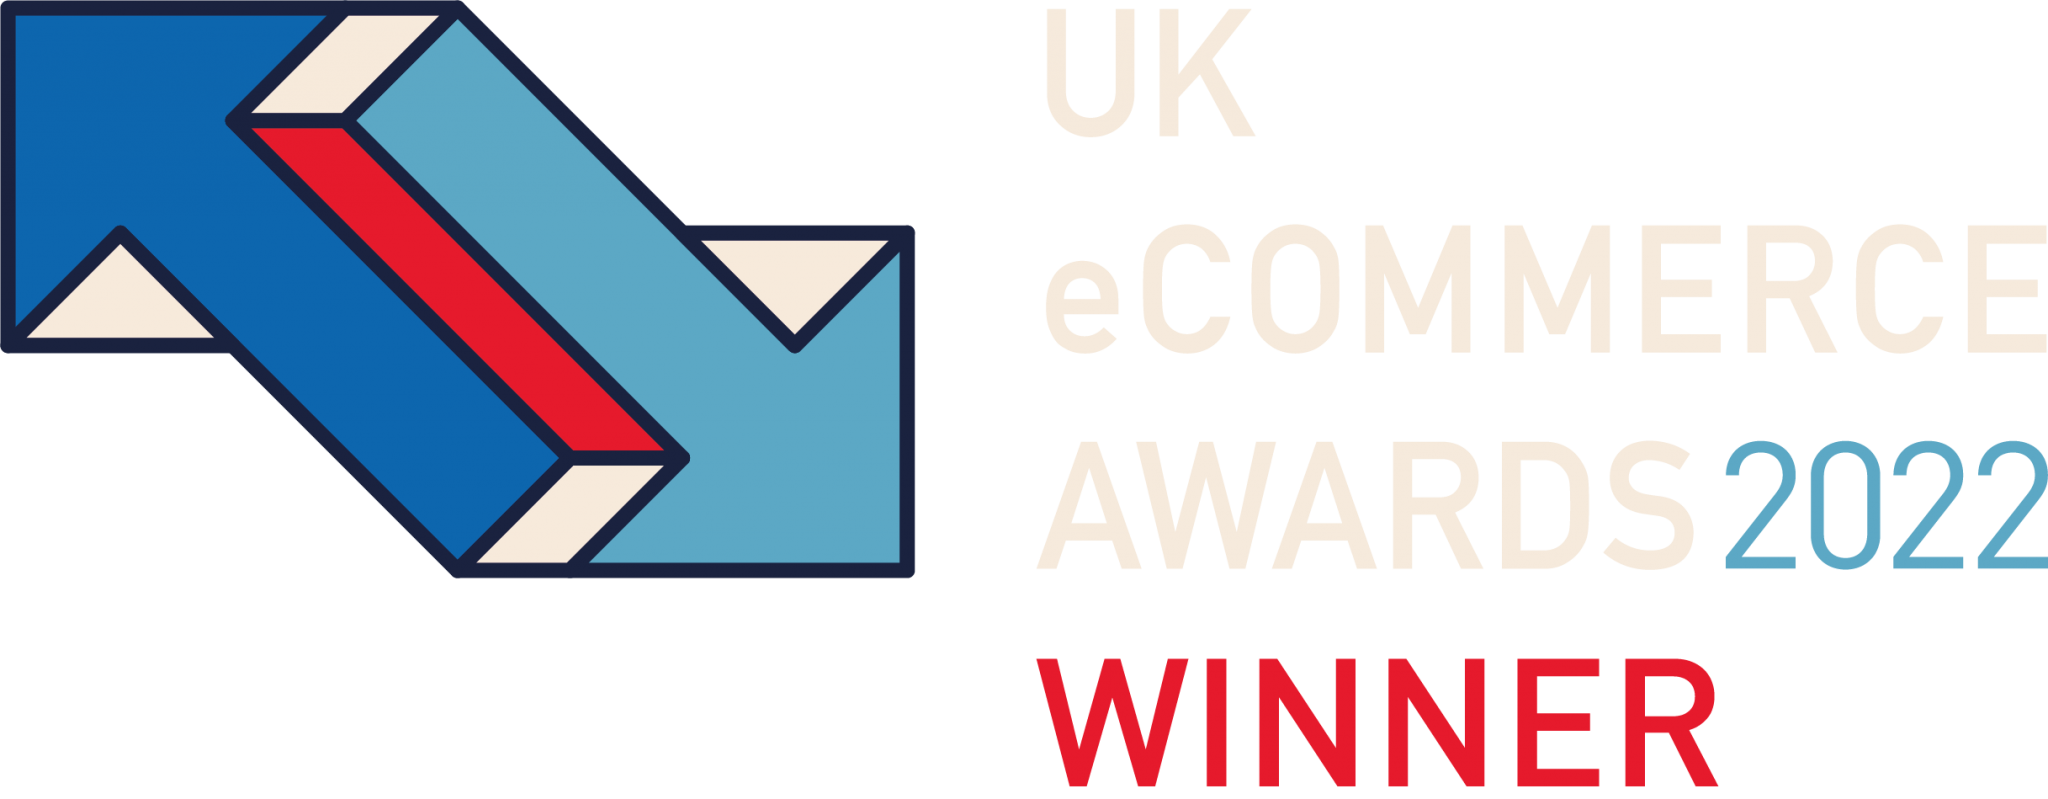 UK eCommerce Award Badge